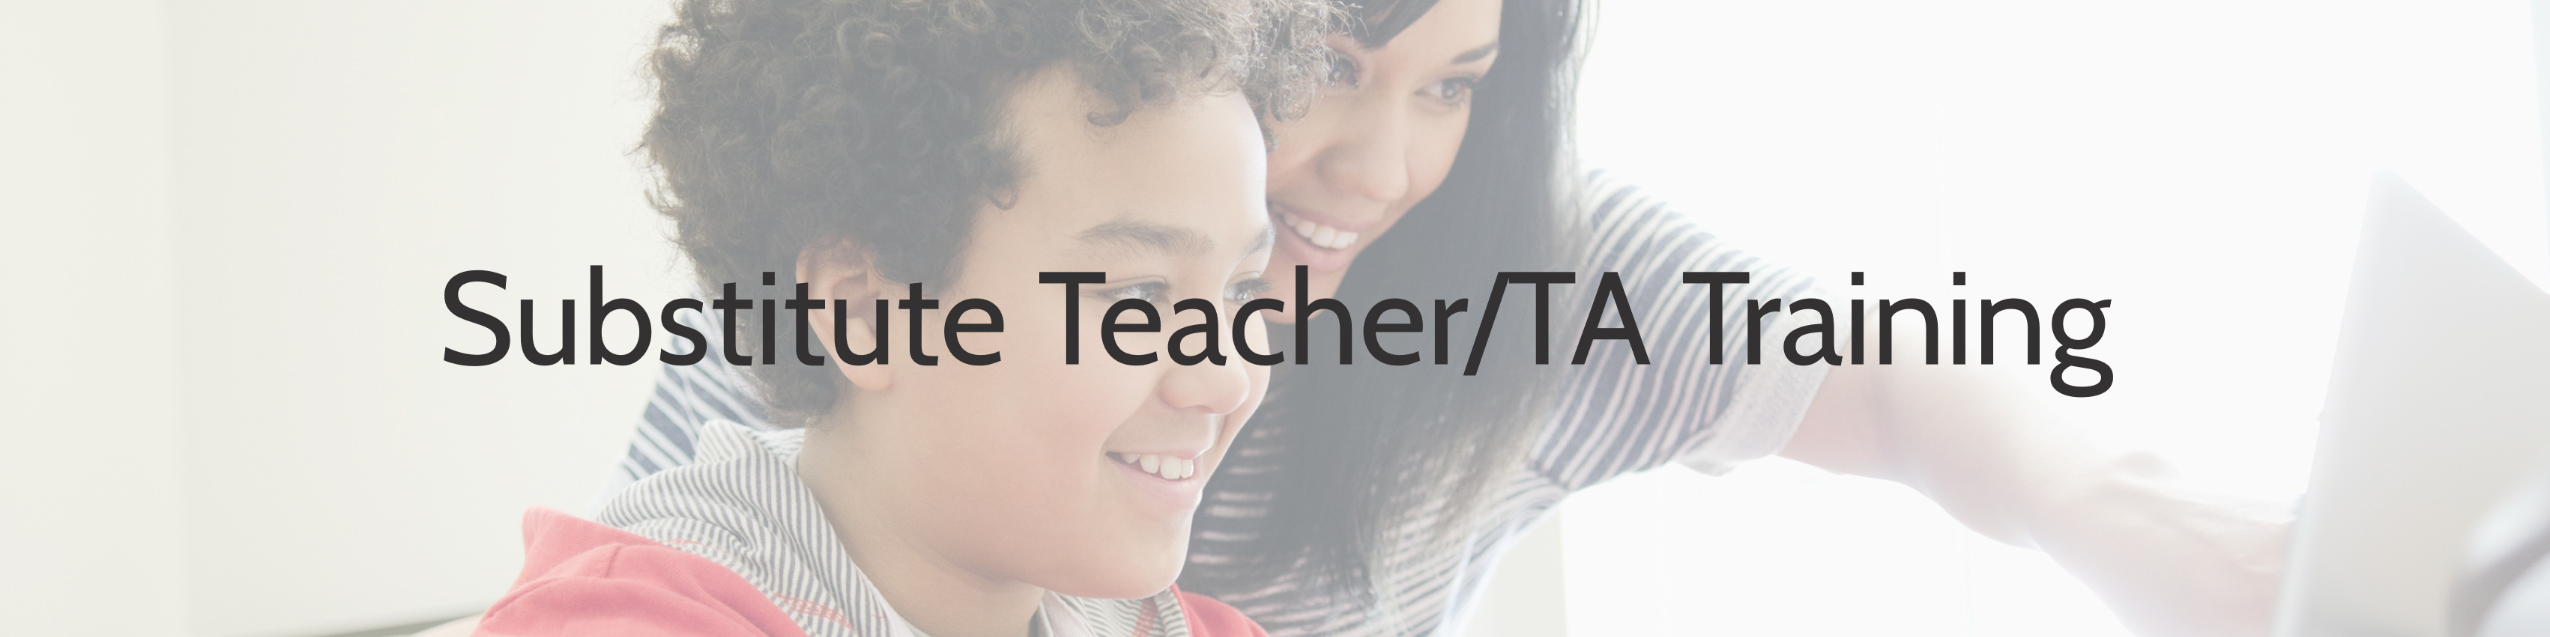 Substitute Teacher/TA Training 